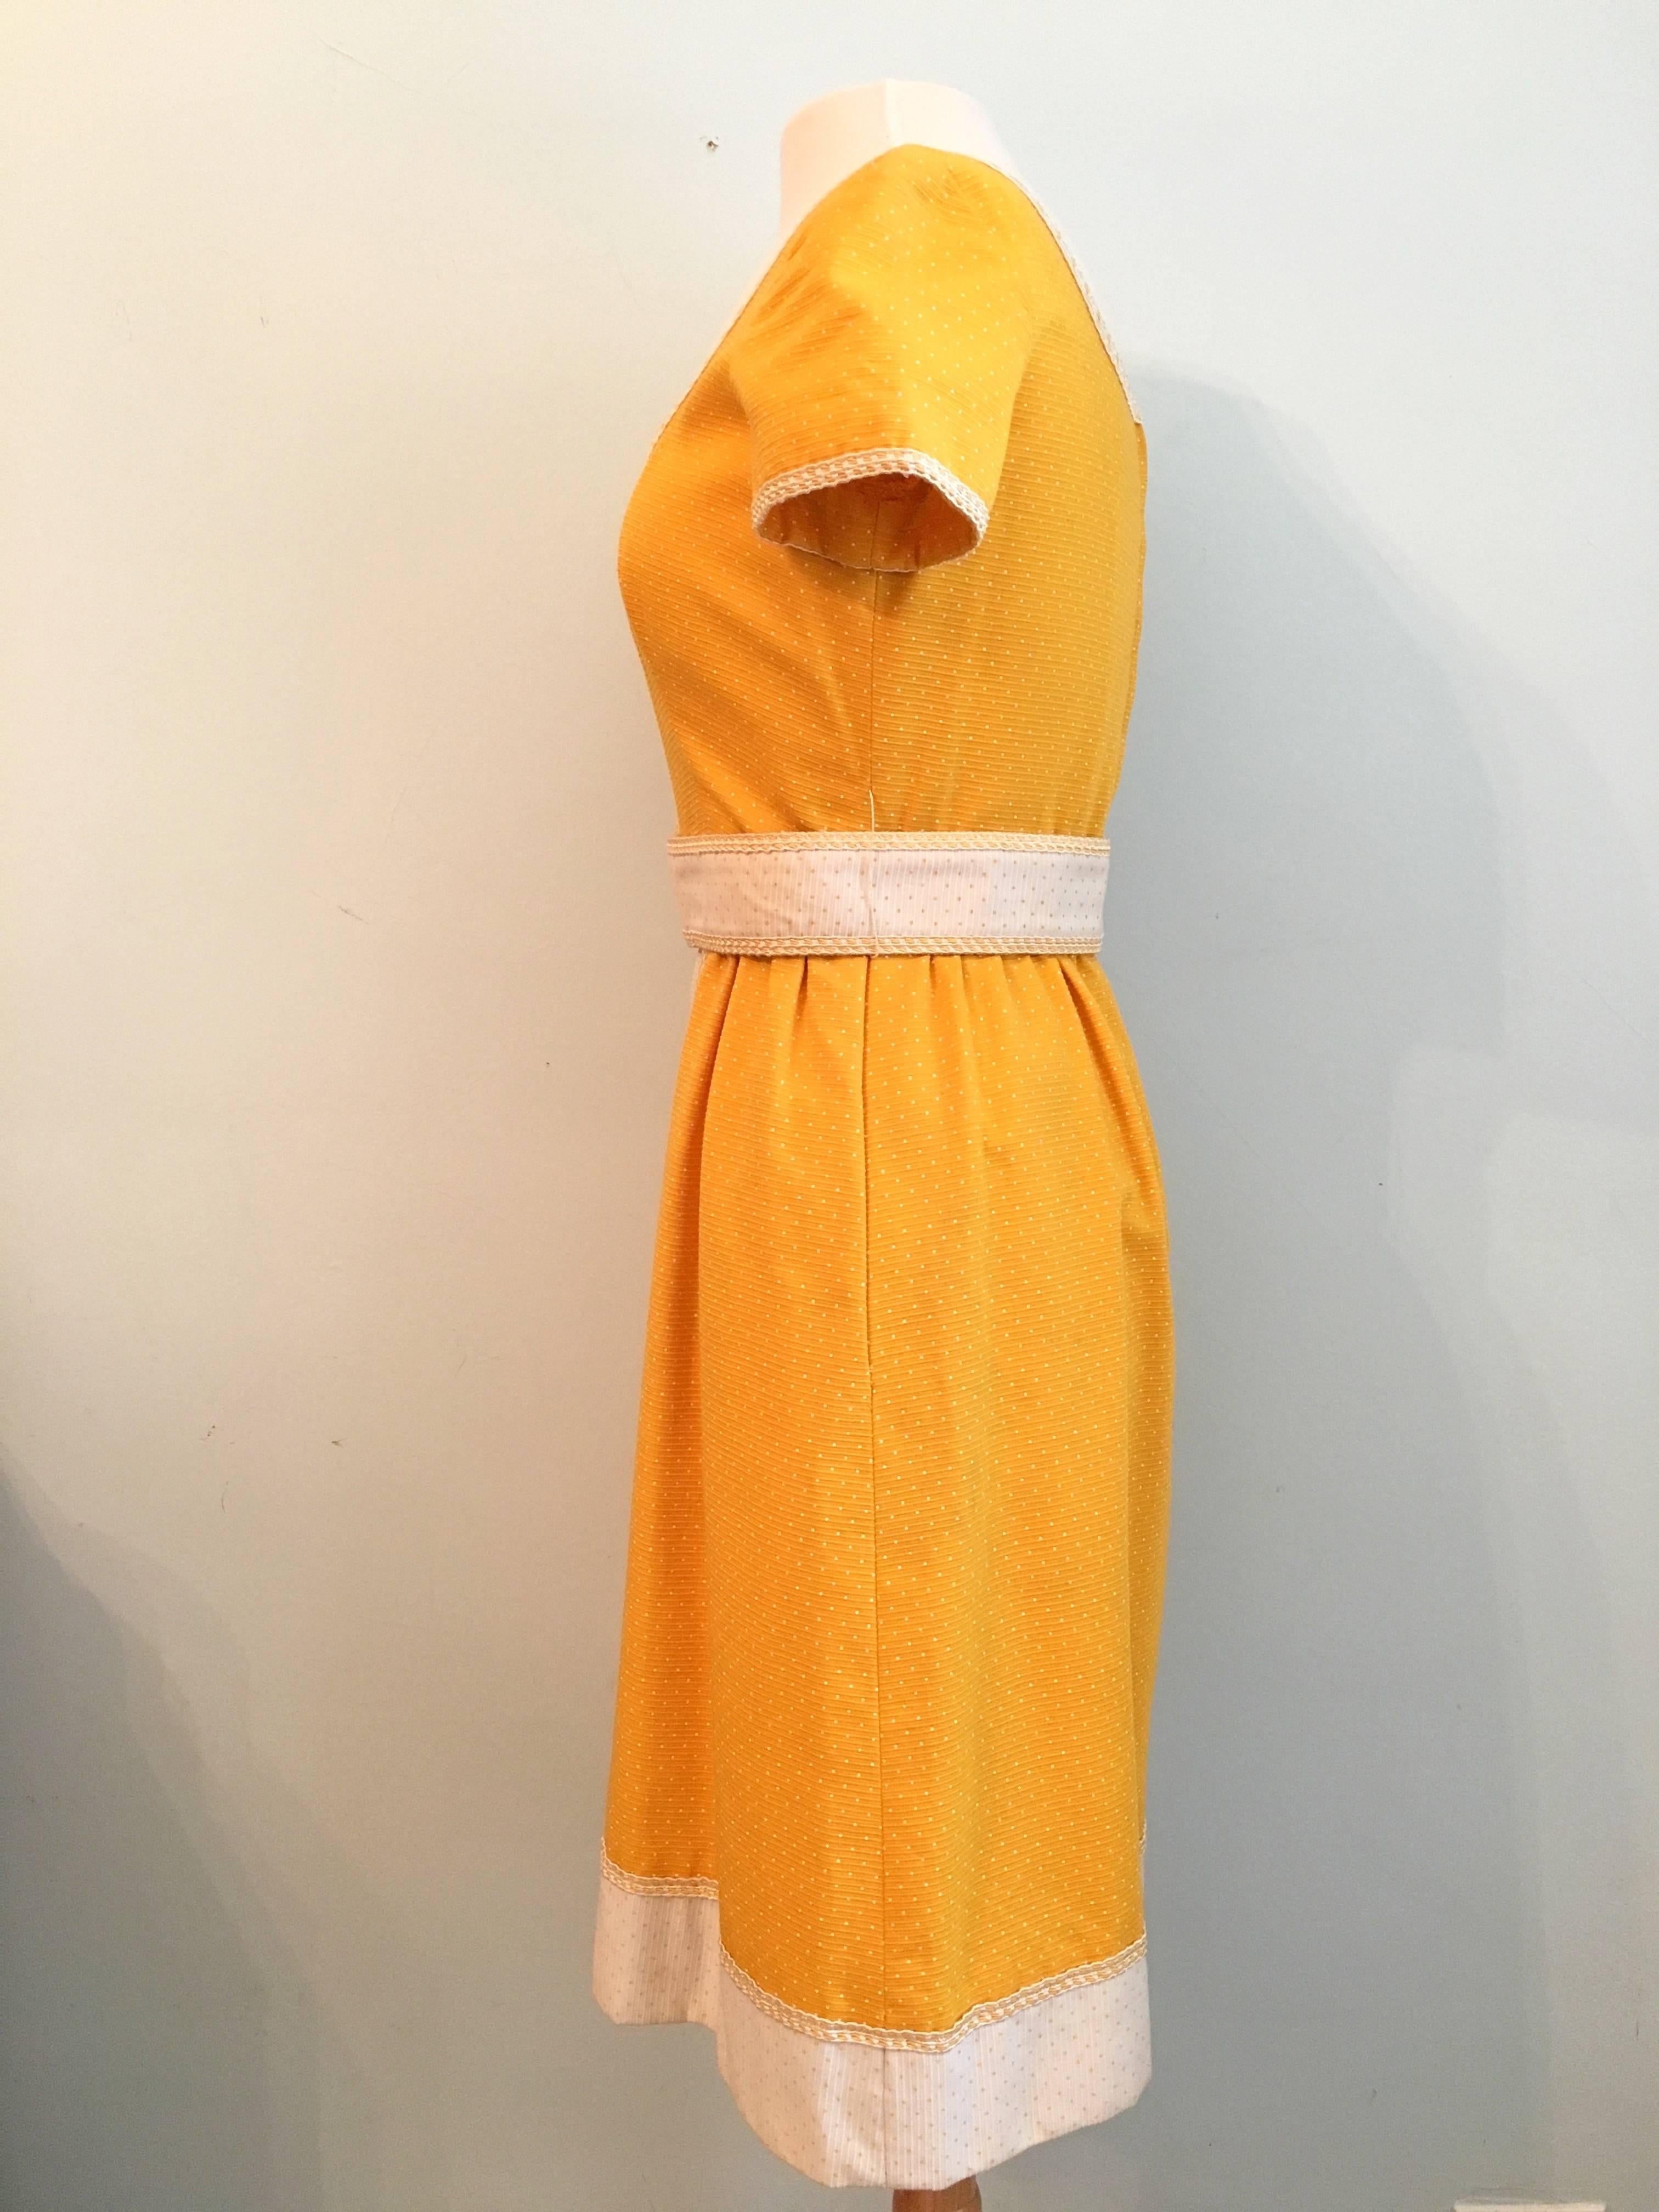 Oscar De La Renta Boutique Yellow Polka Dot Dress, 1960s  For Sale 1